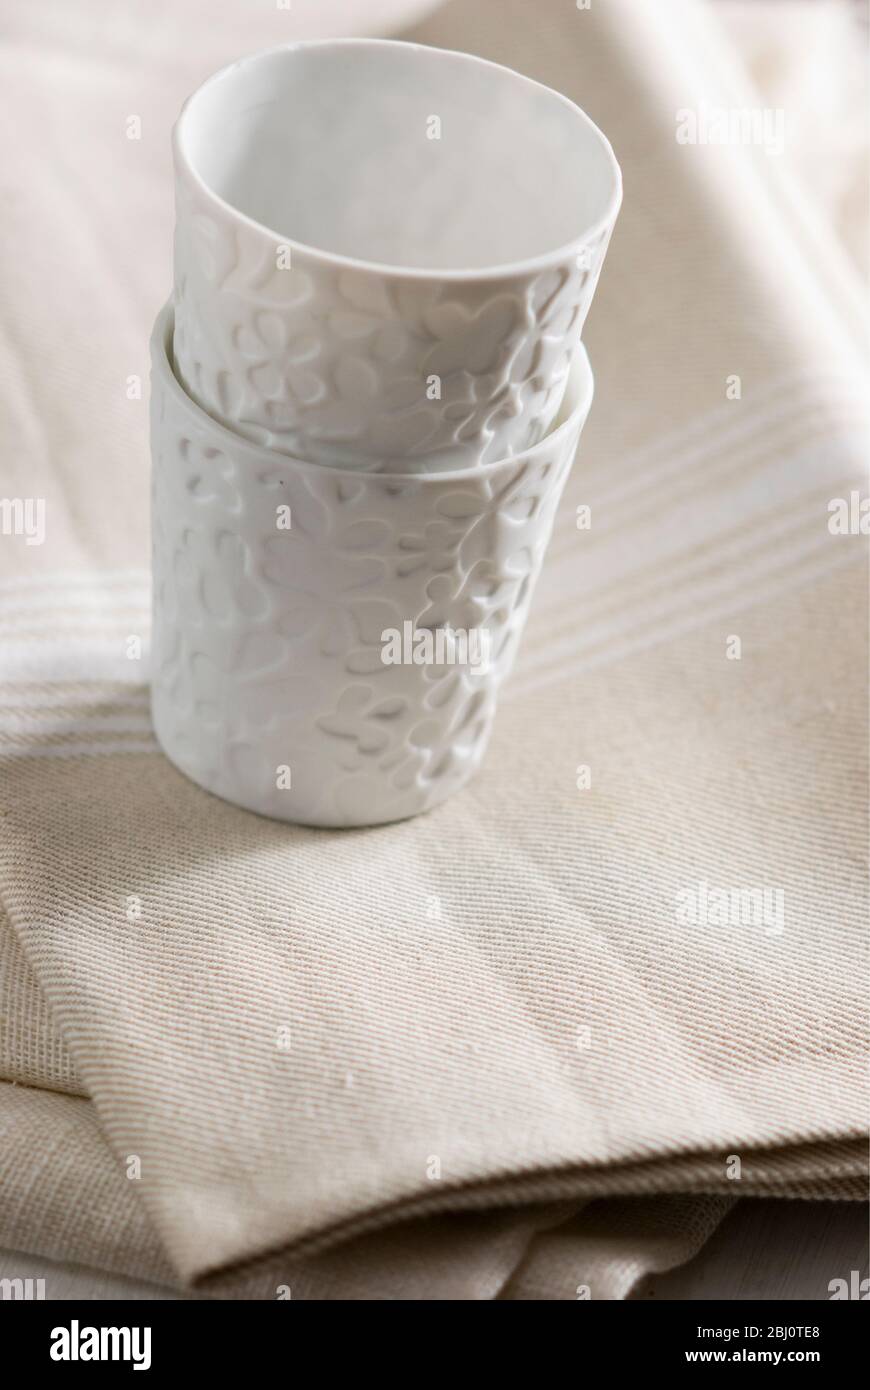 Weiße Porzellanbecher oder Teelicht-Halter auf cremefarbenen Leinentuch gestapelt - Stockfoto